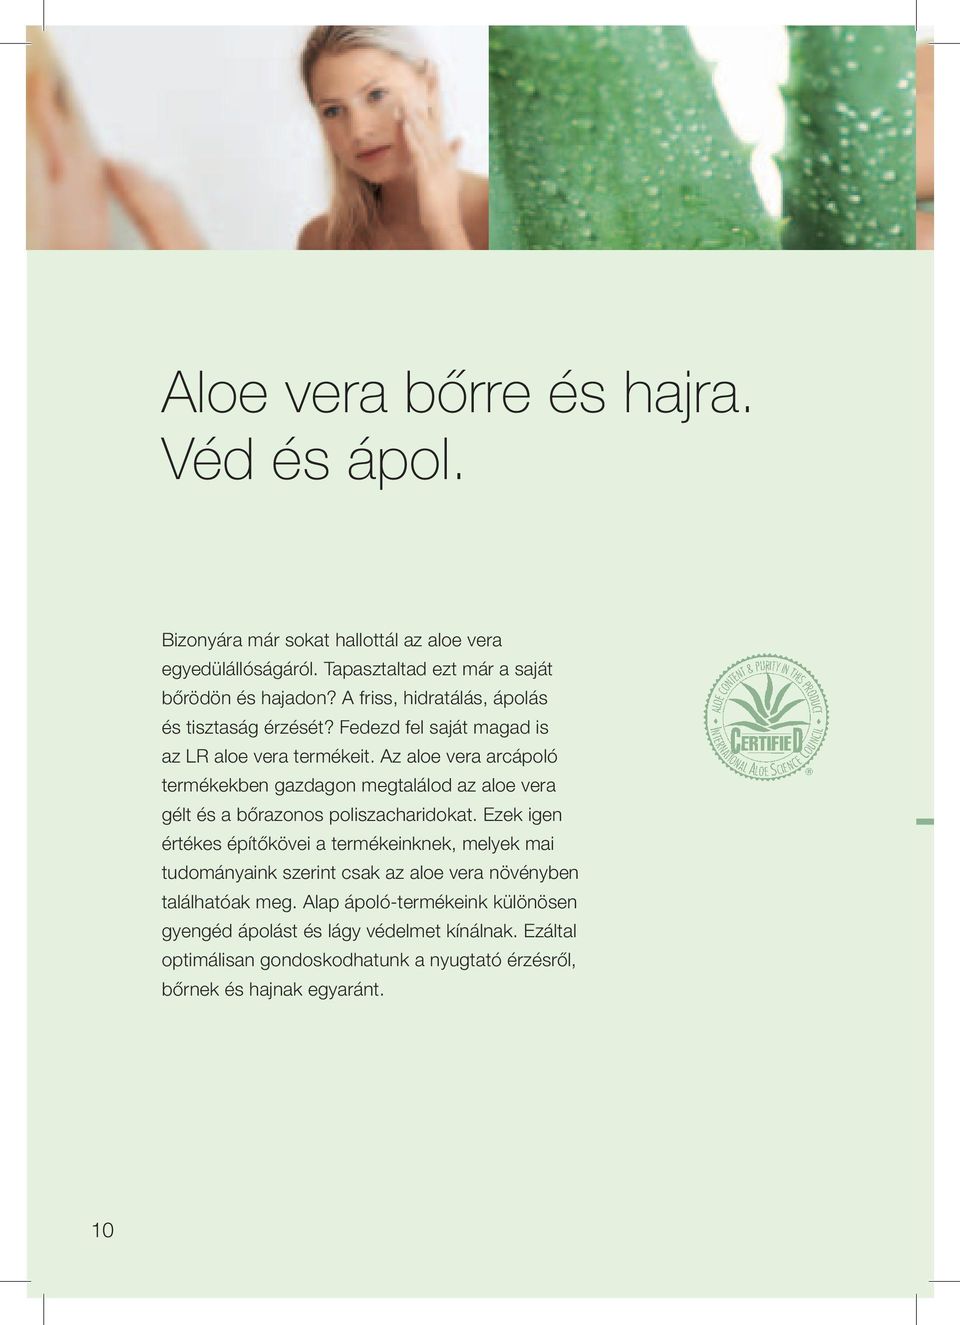 Az aloe vera arcápoló termékekben gazdagon megtalálod az aloe vera gélt és a bőrazonos poliszacharidokat.